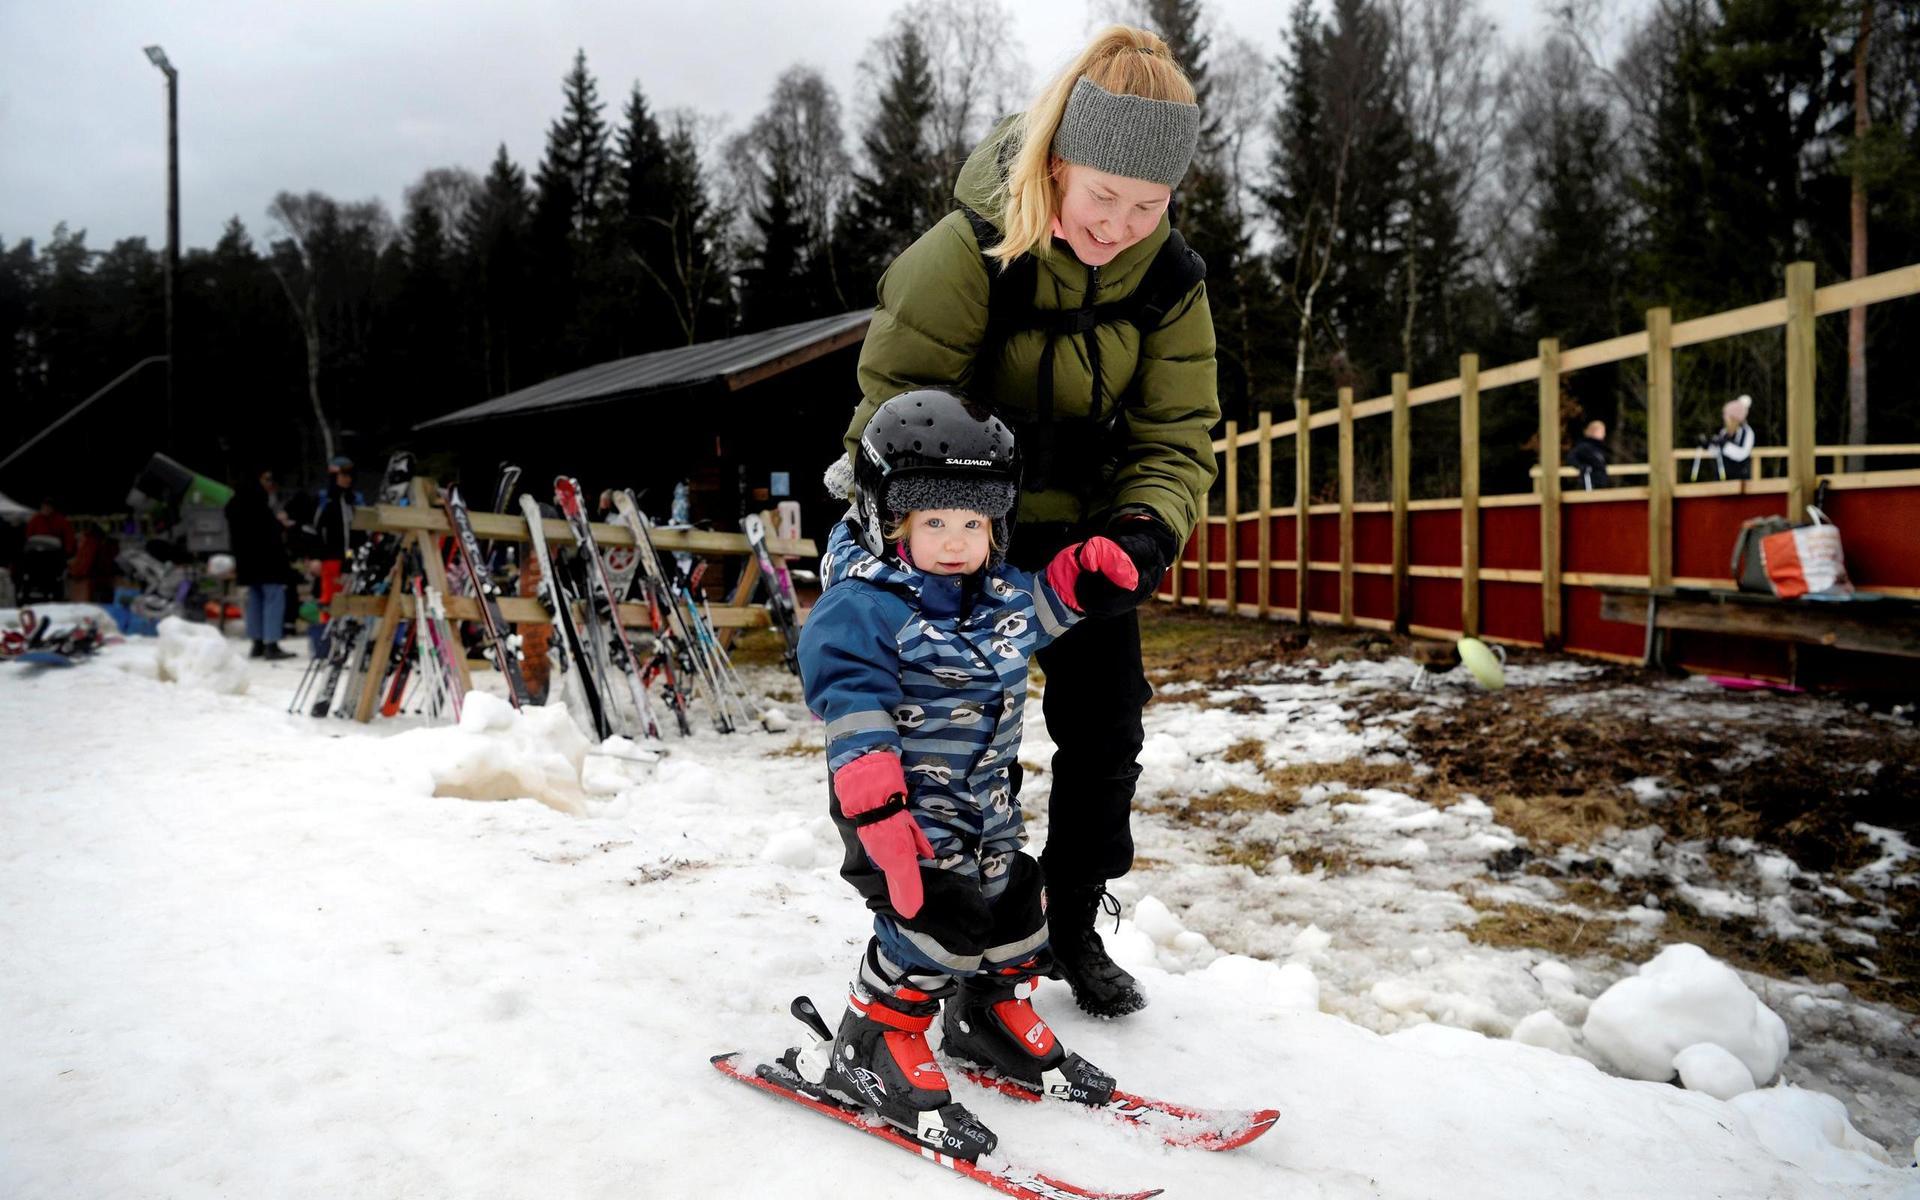 Ilse Thorell hade en egen premiär under dagen och åkte skidor för första gången. Här med coachning från mamma Sara Thorell.